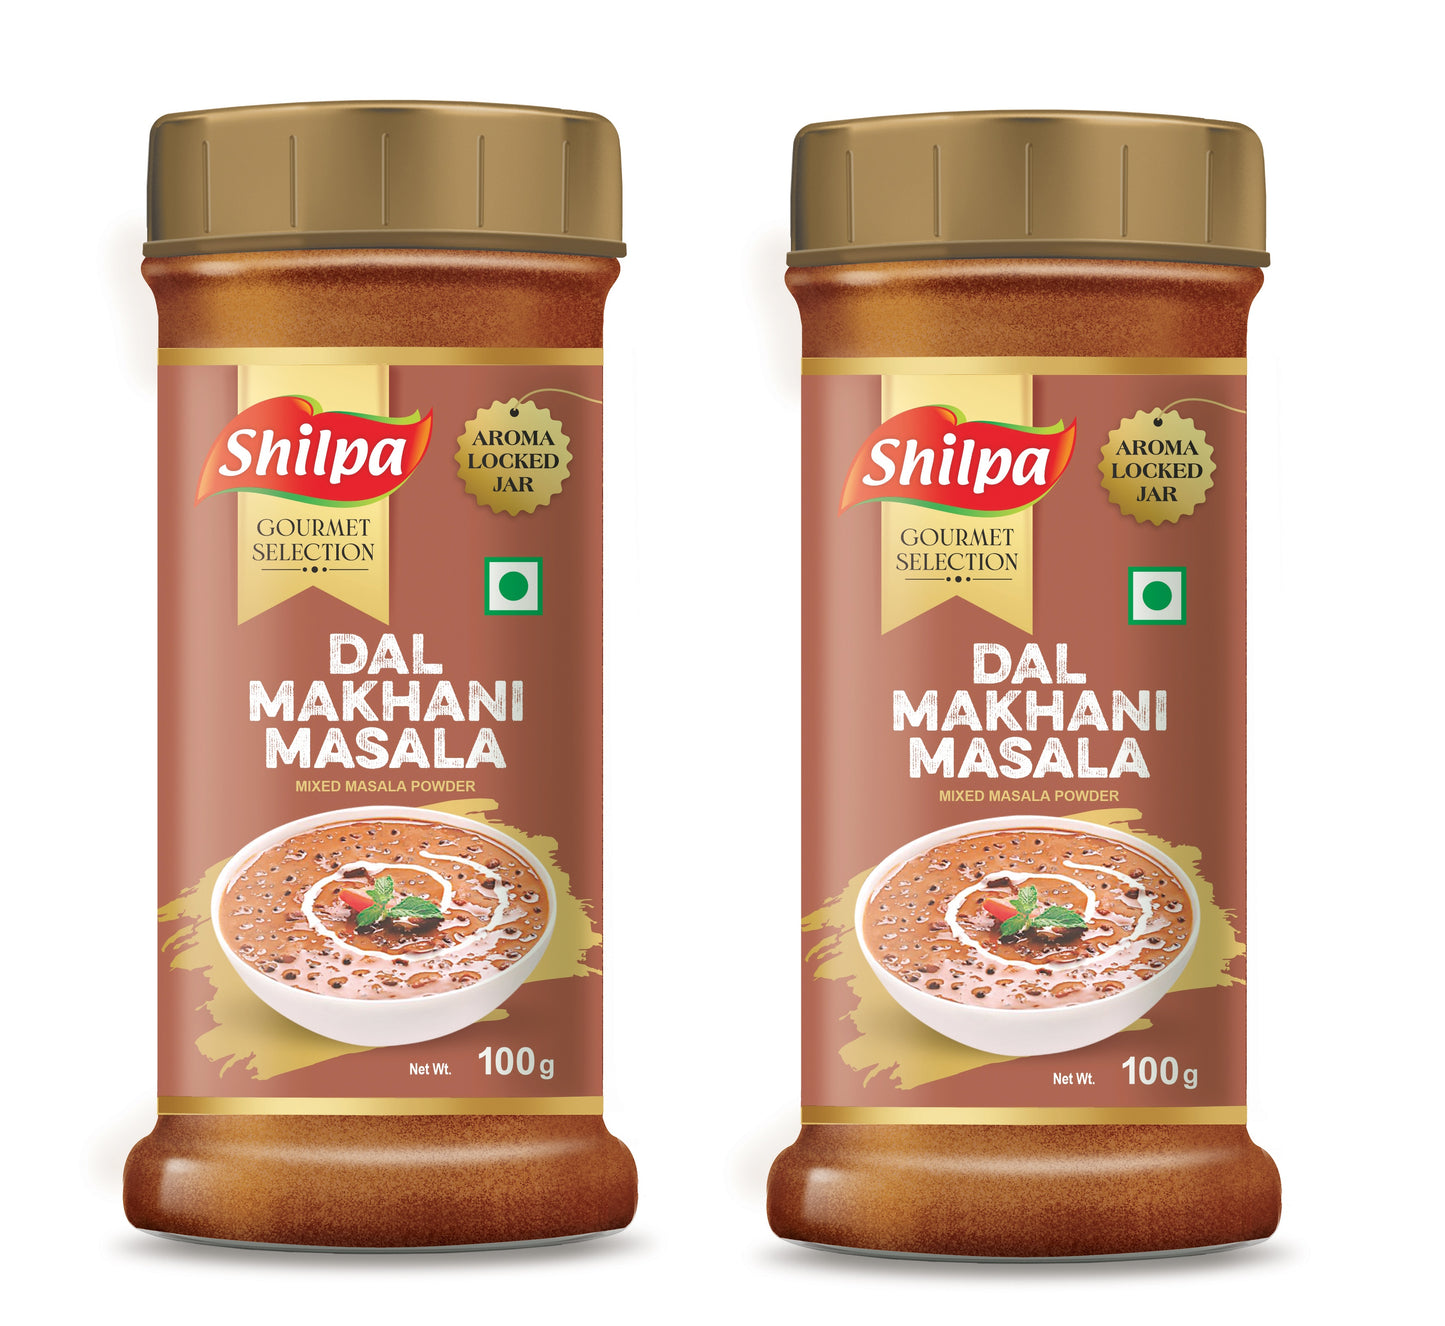 Shilpa Dal Makhani Masala, Mixed Masala Powder 100g Jar